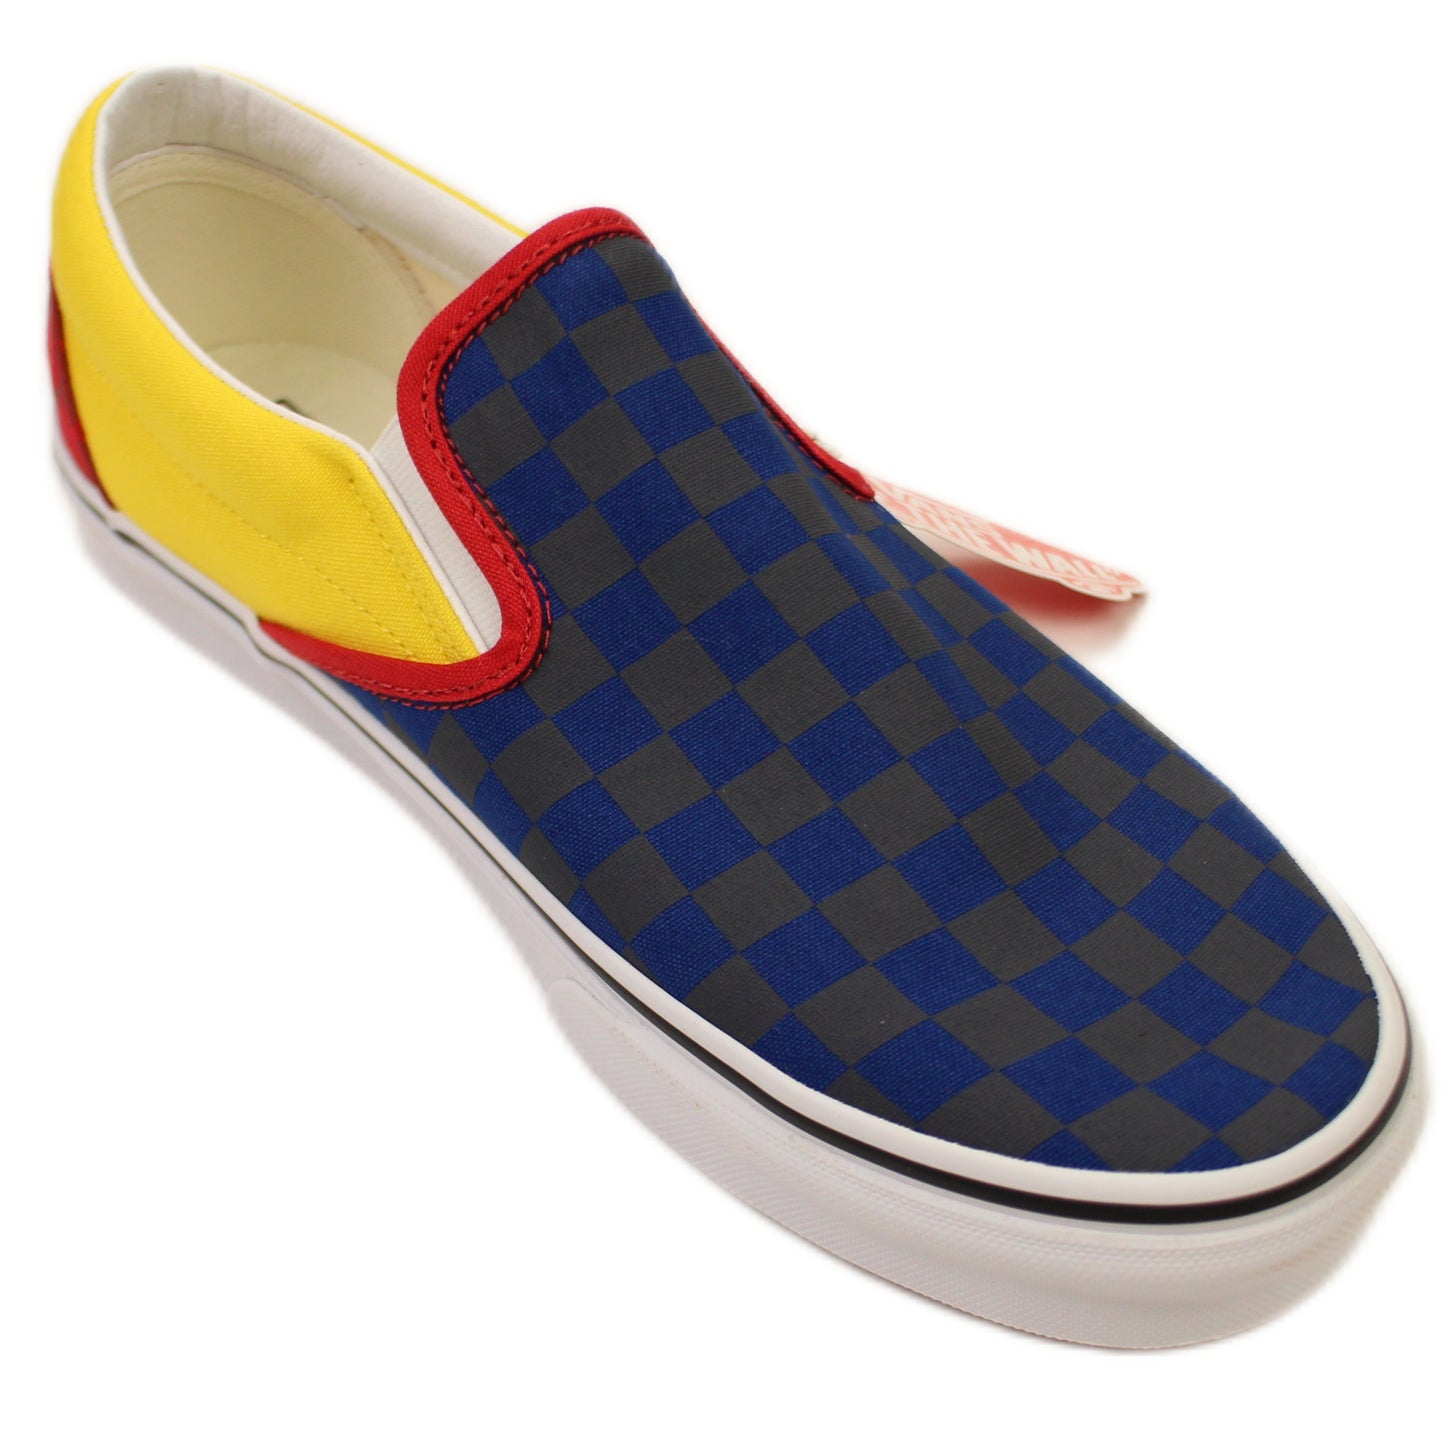 Vans U Classic Slip-On Sneakers - Navy Yellow